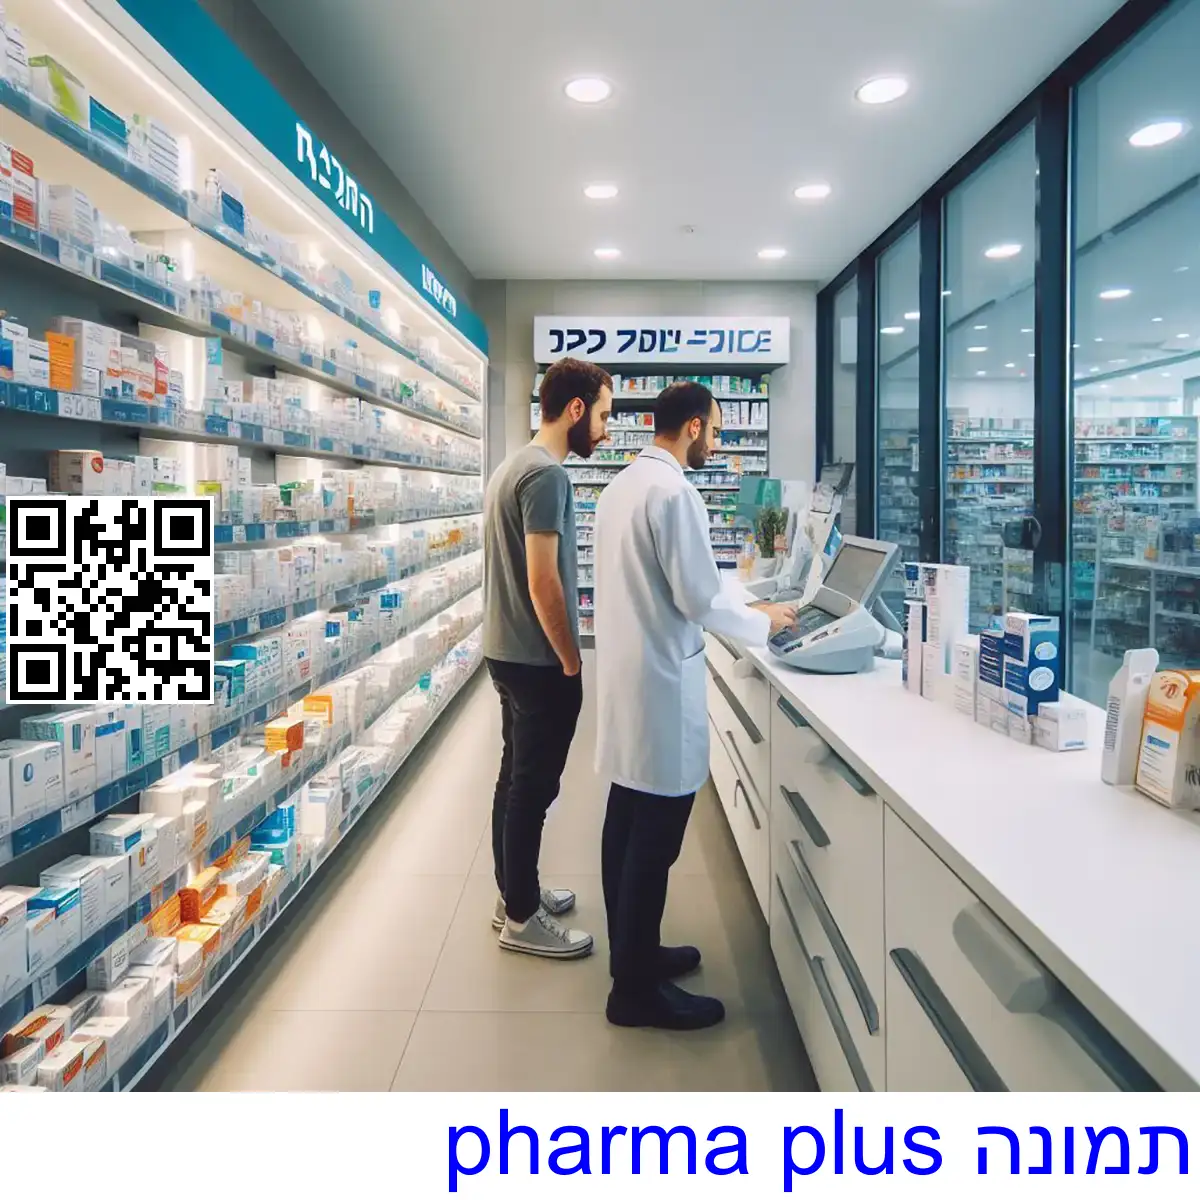 pharma plus